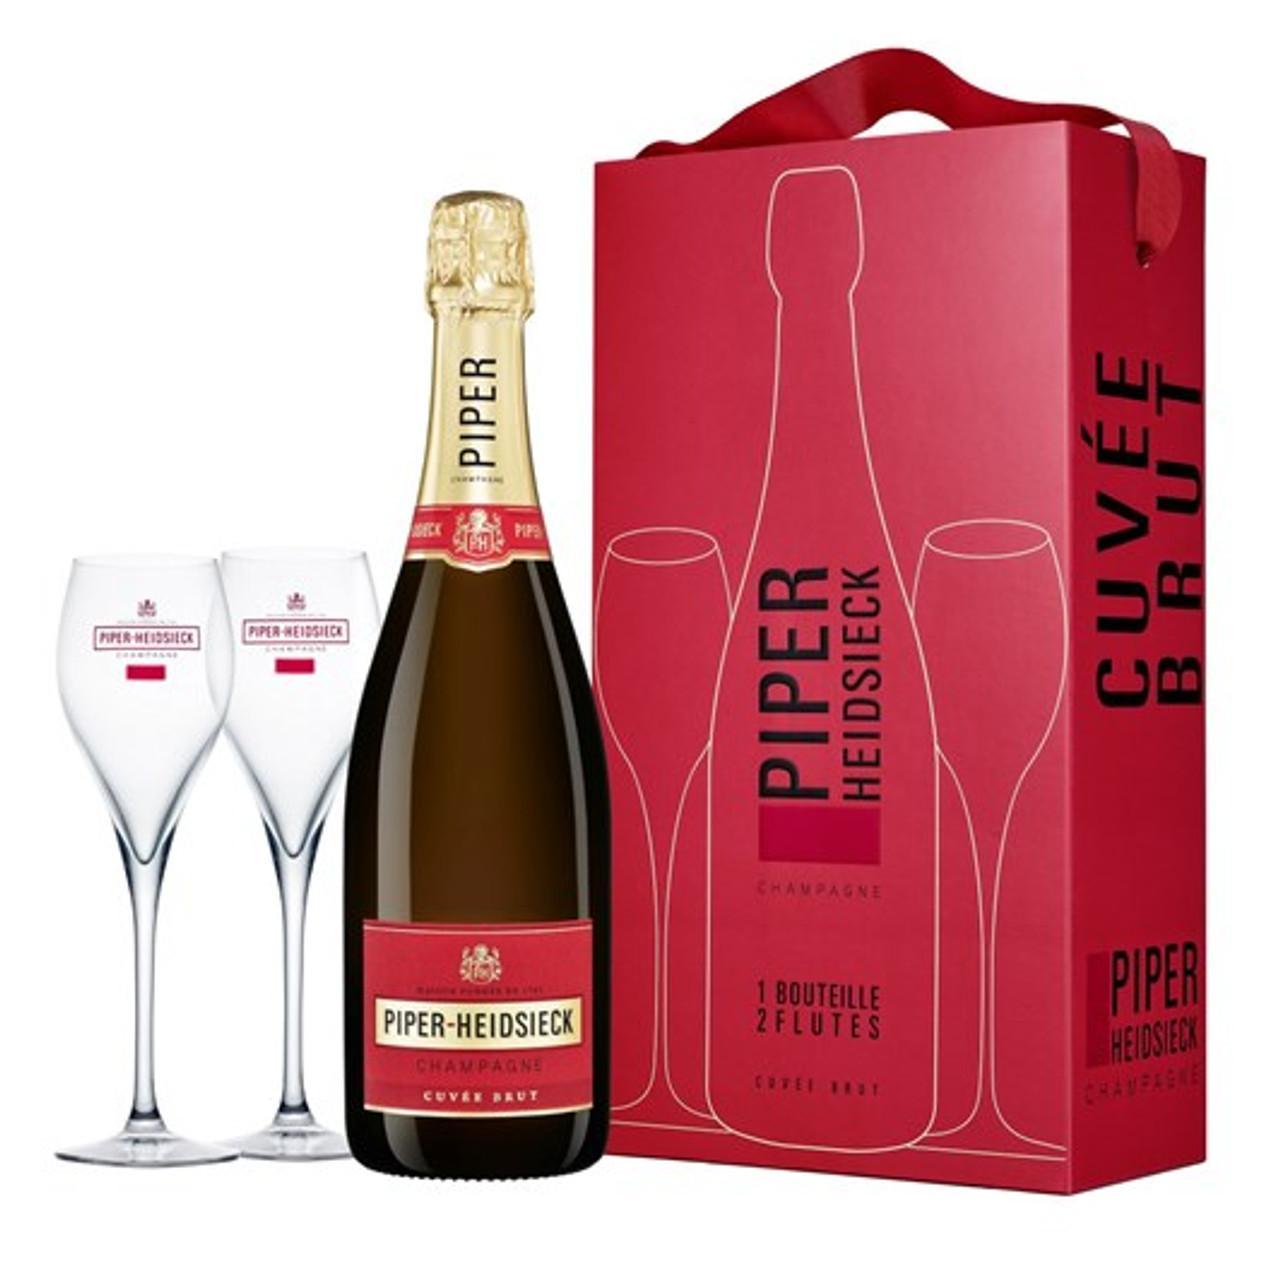 piper-heidsieck piper-heidsieck champagne cuve brut 75 cl confezione con 2 bicchieri